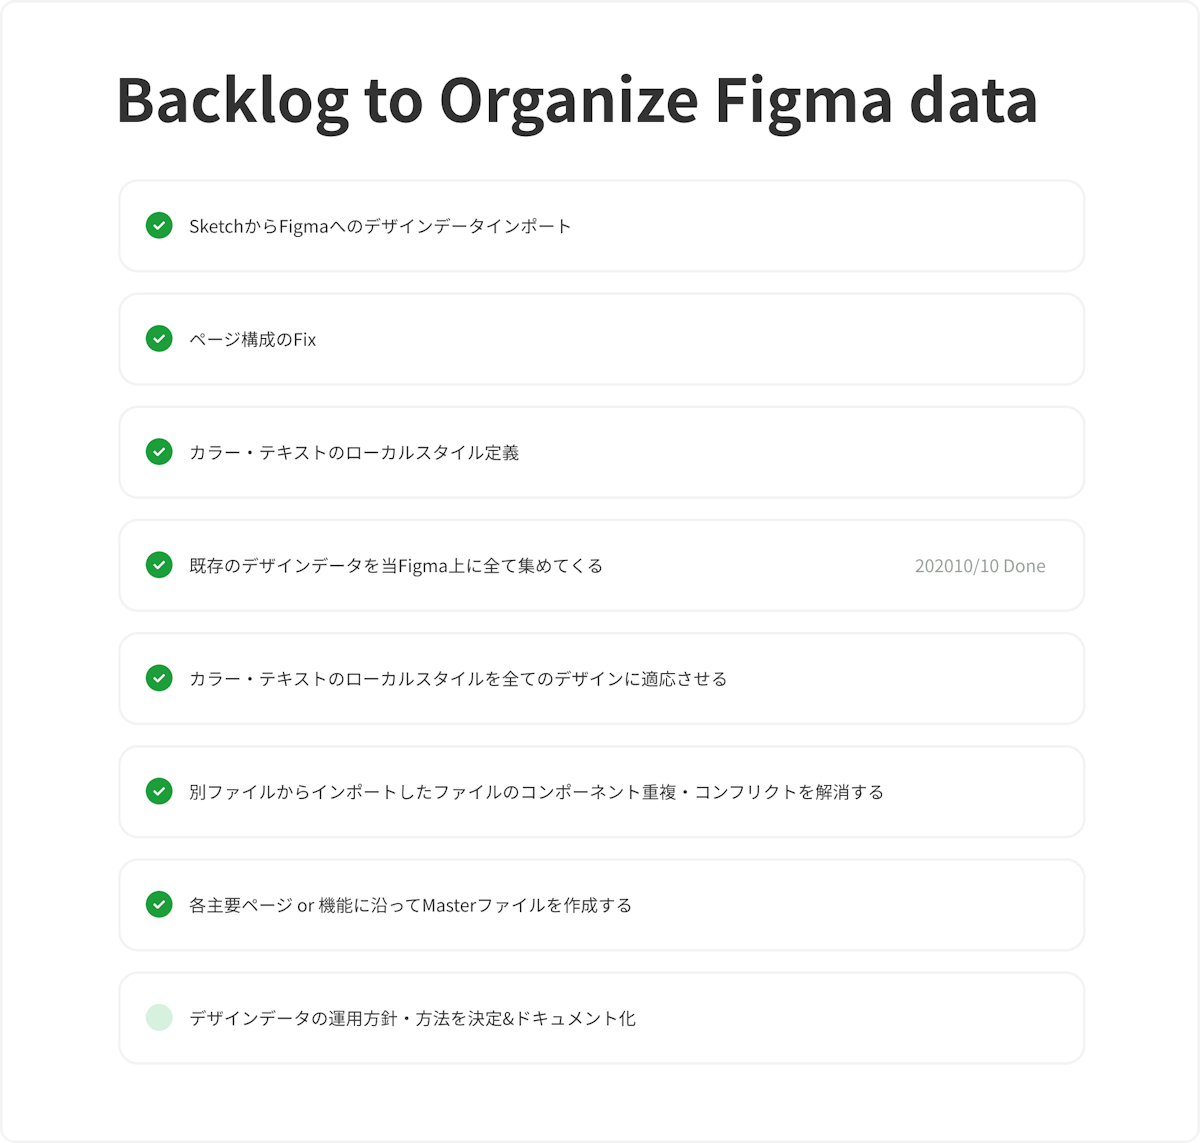 Backlog to Organize Figma dateの画像。上から順に、次のように書かれている。SketchからFigmaへのデザインデータインポート、ページ構成のFix、カラー・テキストのローカルスタイル定義、既存のデザインデータを当Figma上に全て集めてくる、カラー・テキストのローカルスタイルを全てのデザインに適応させる、別ファイルからインポートしたファイルのコンポーネント重複・コンフリクトを解消する、各主要ページor機能に沿ってMasterファイルを作成する、デザインデータの運用方針・方法を決定＆ドキュメント化。